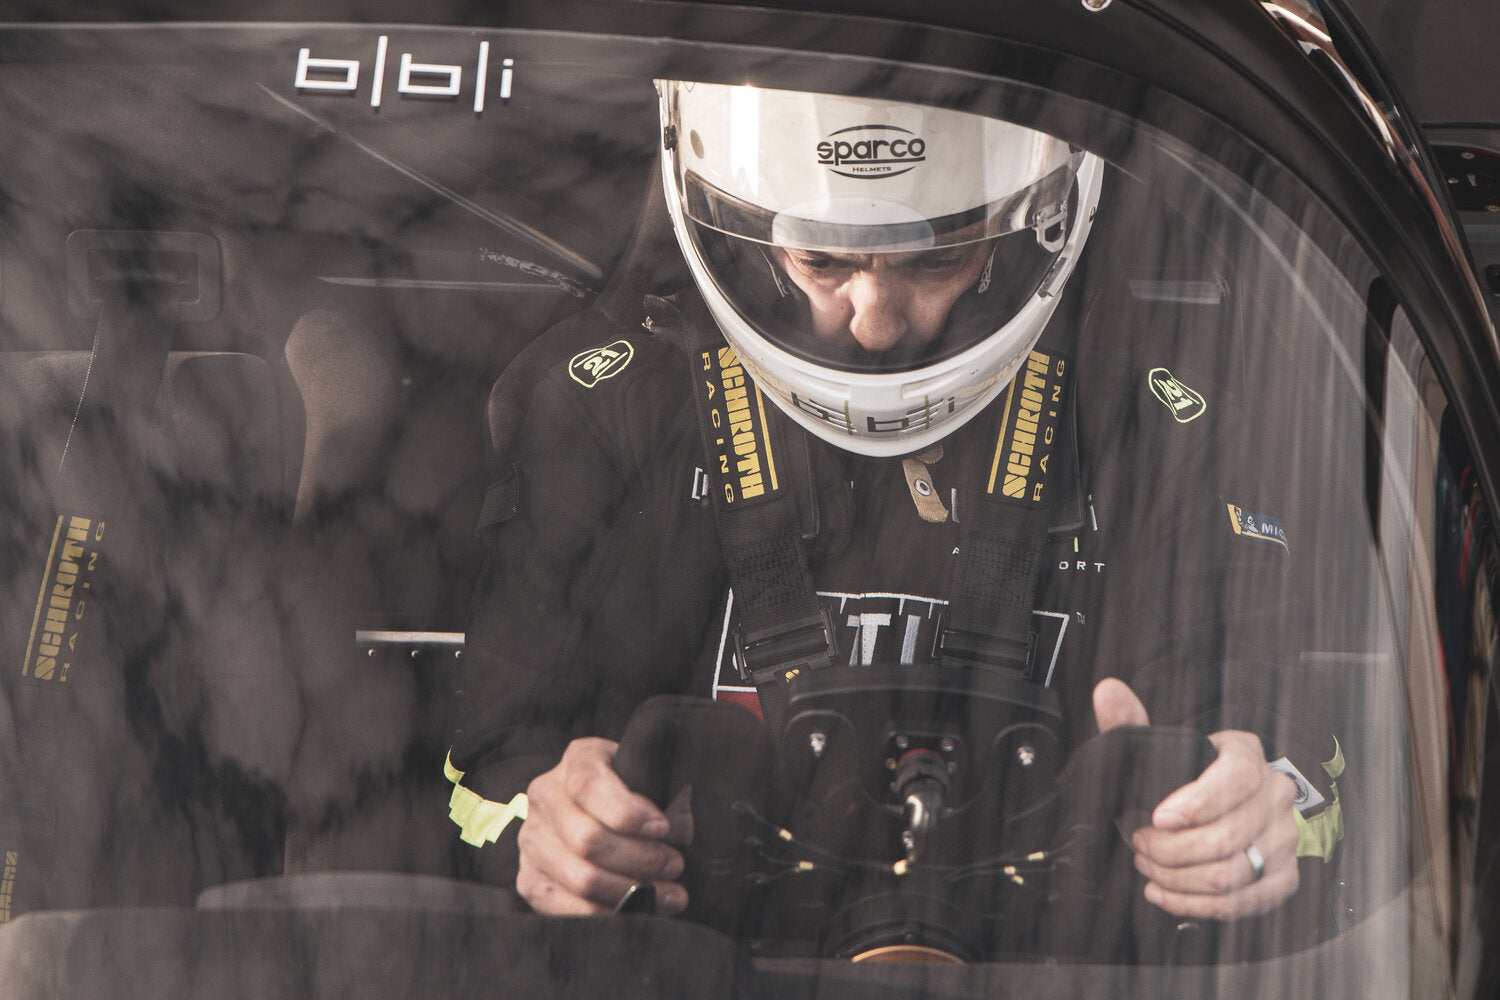 Betim Berisha inside a car